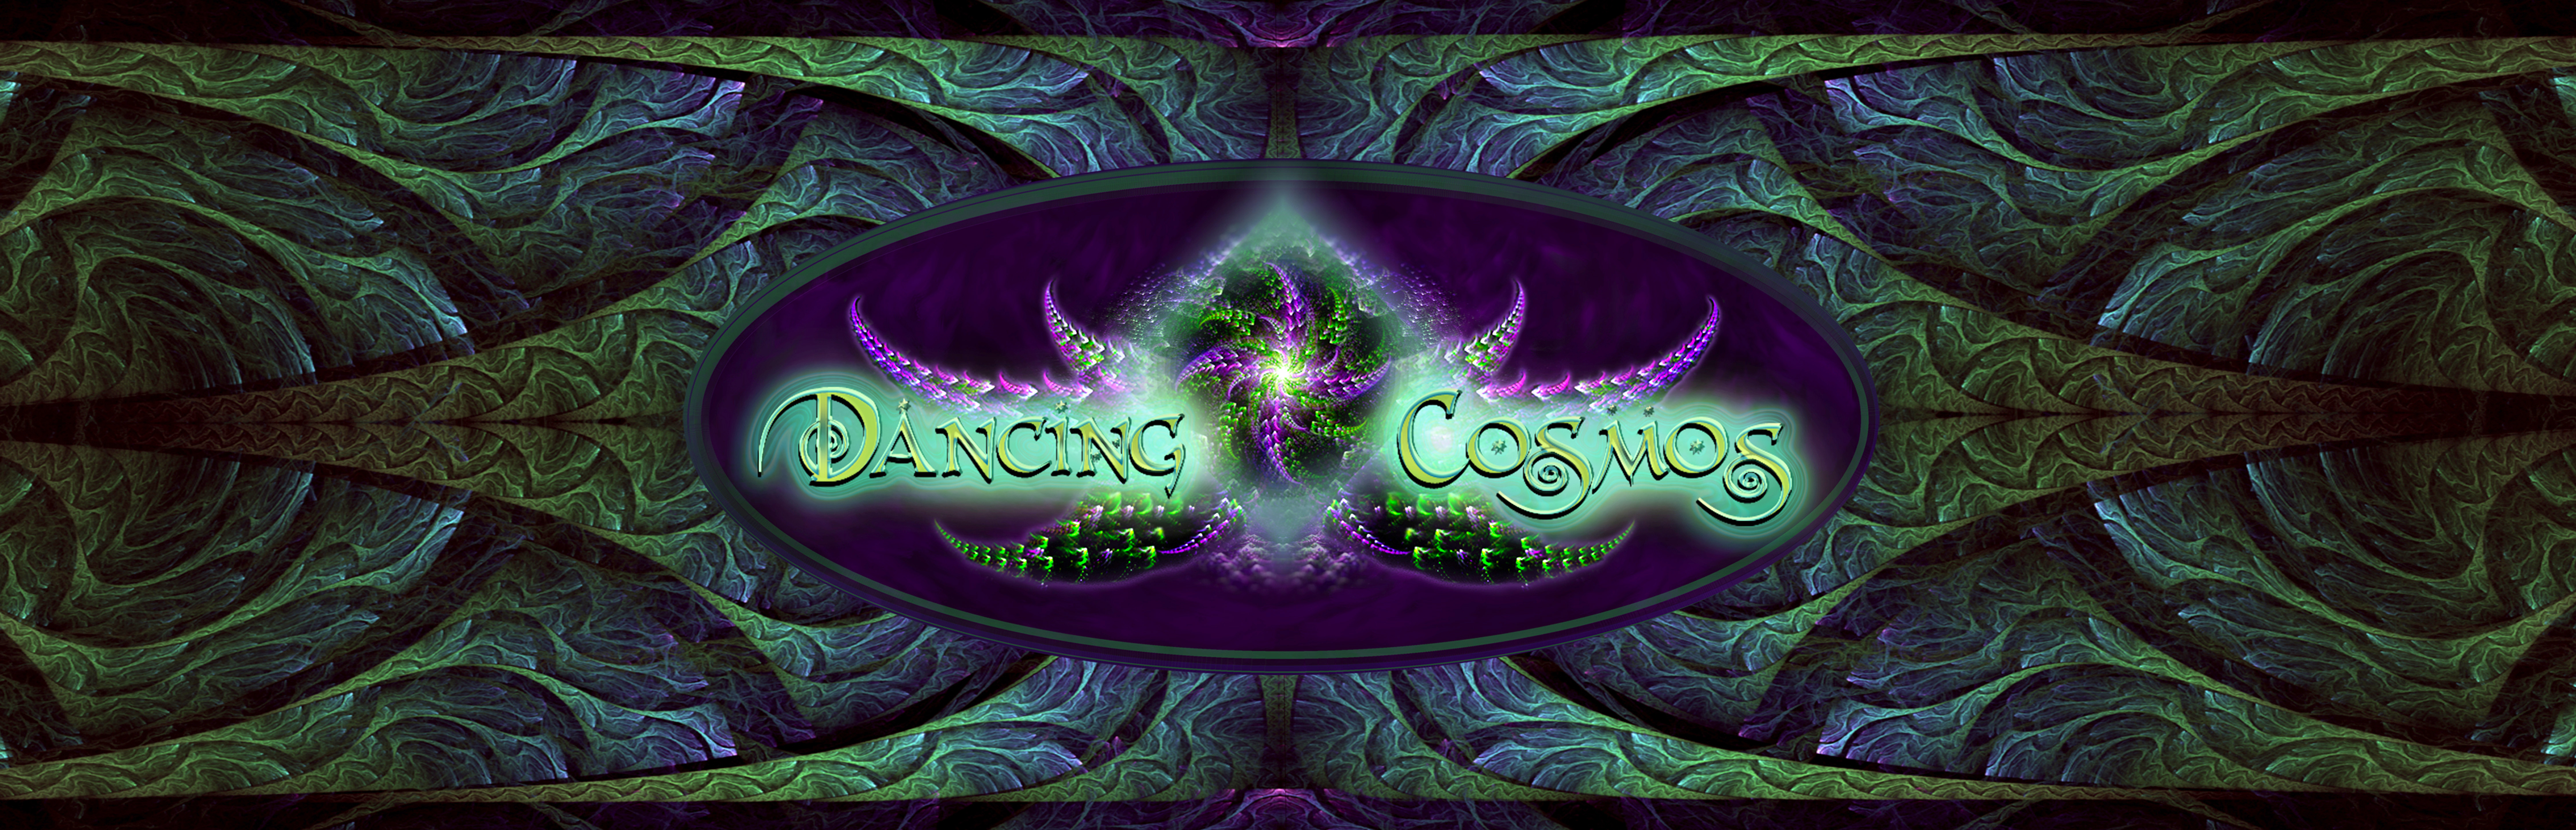 Dancing Cosmos